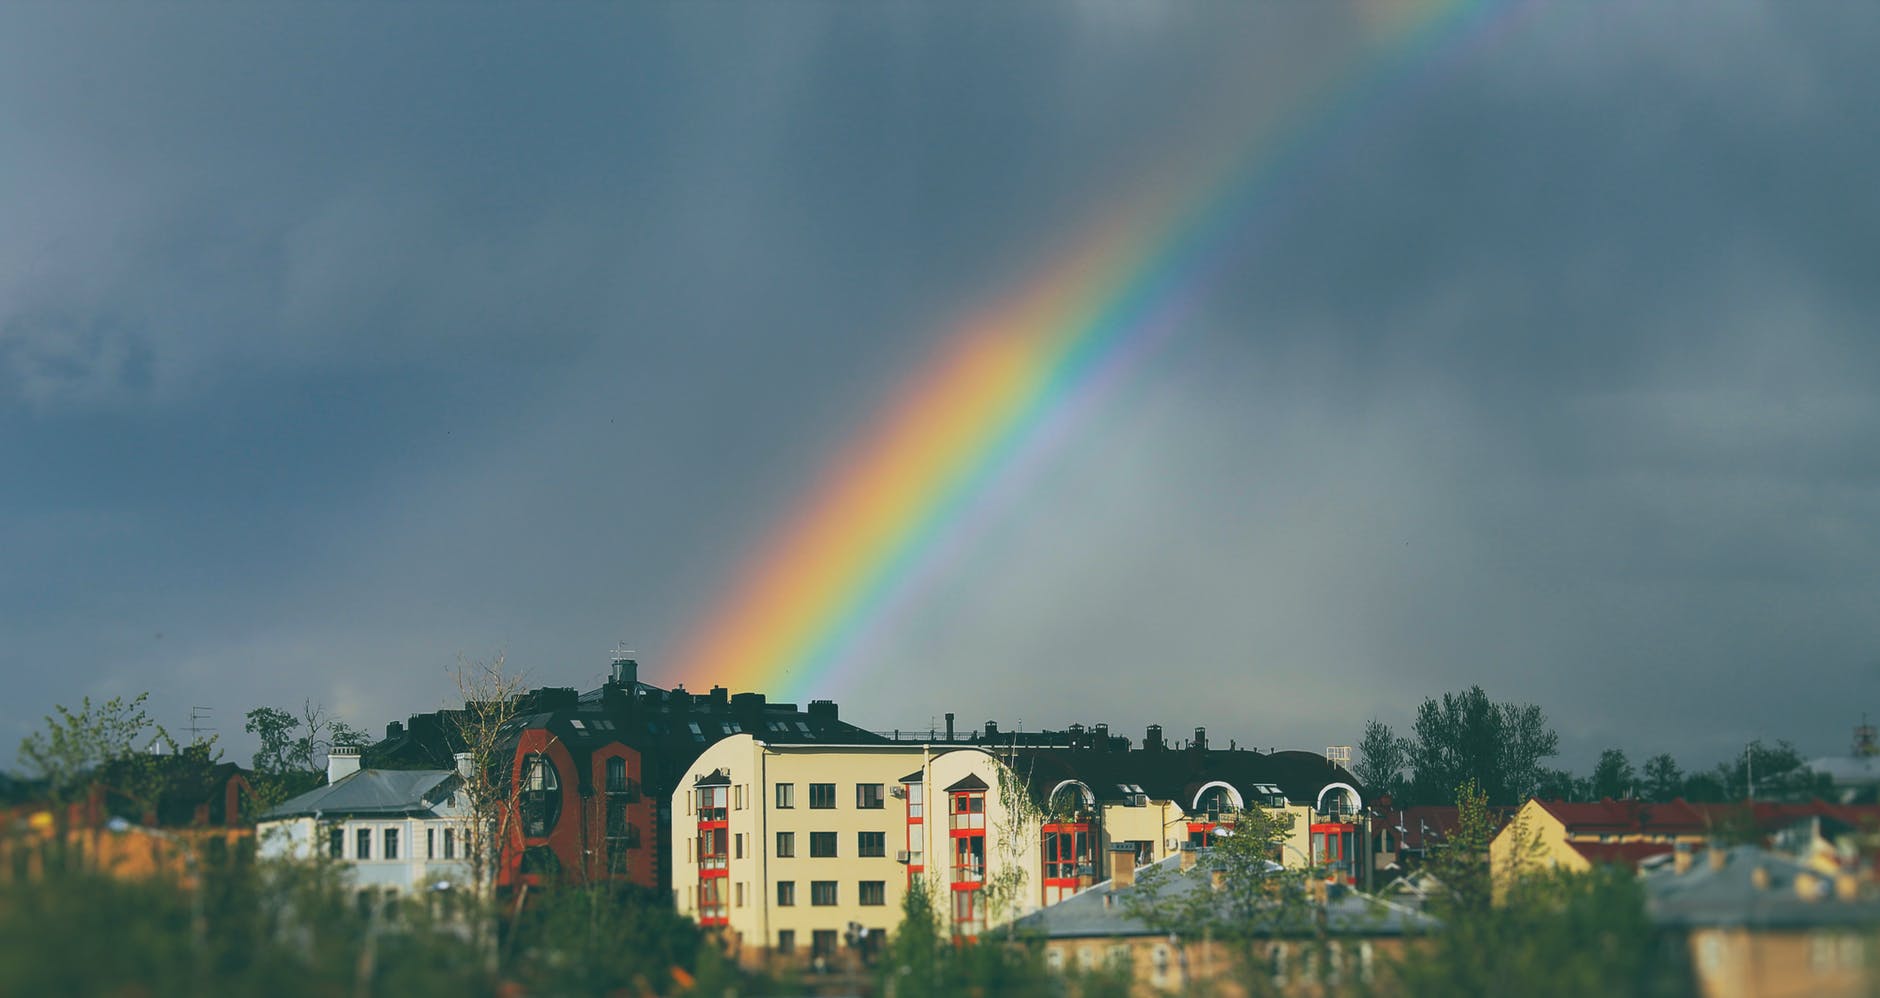 rainbow on sky over buildings